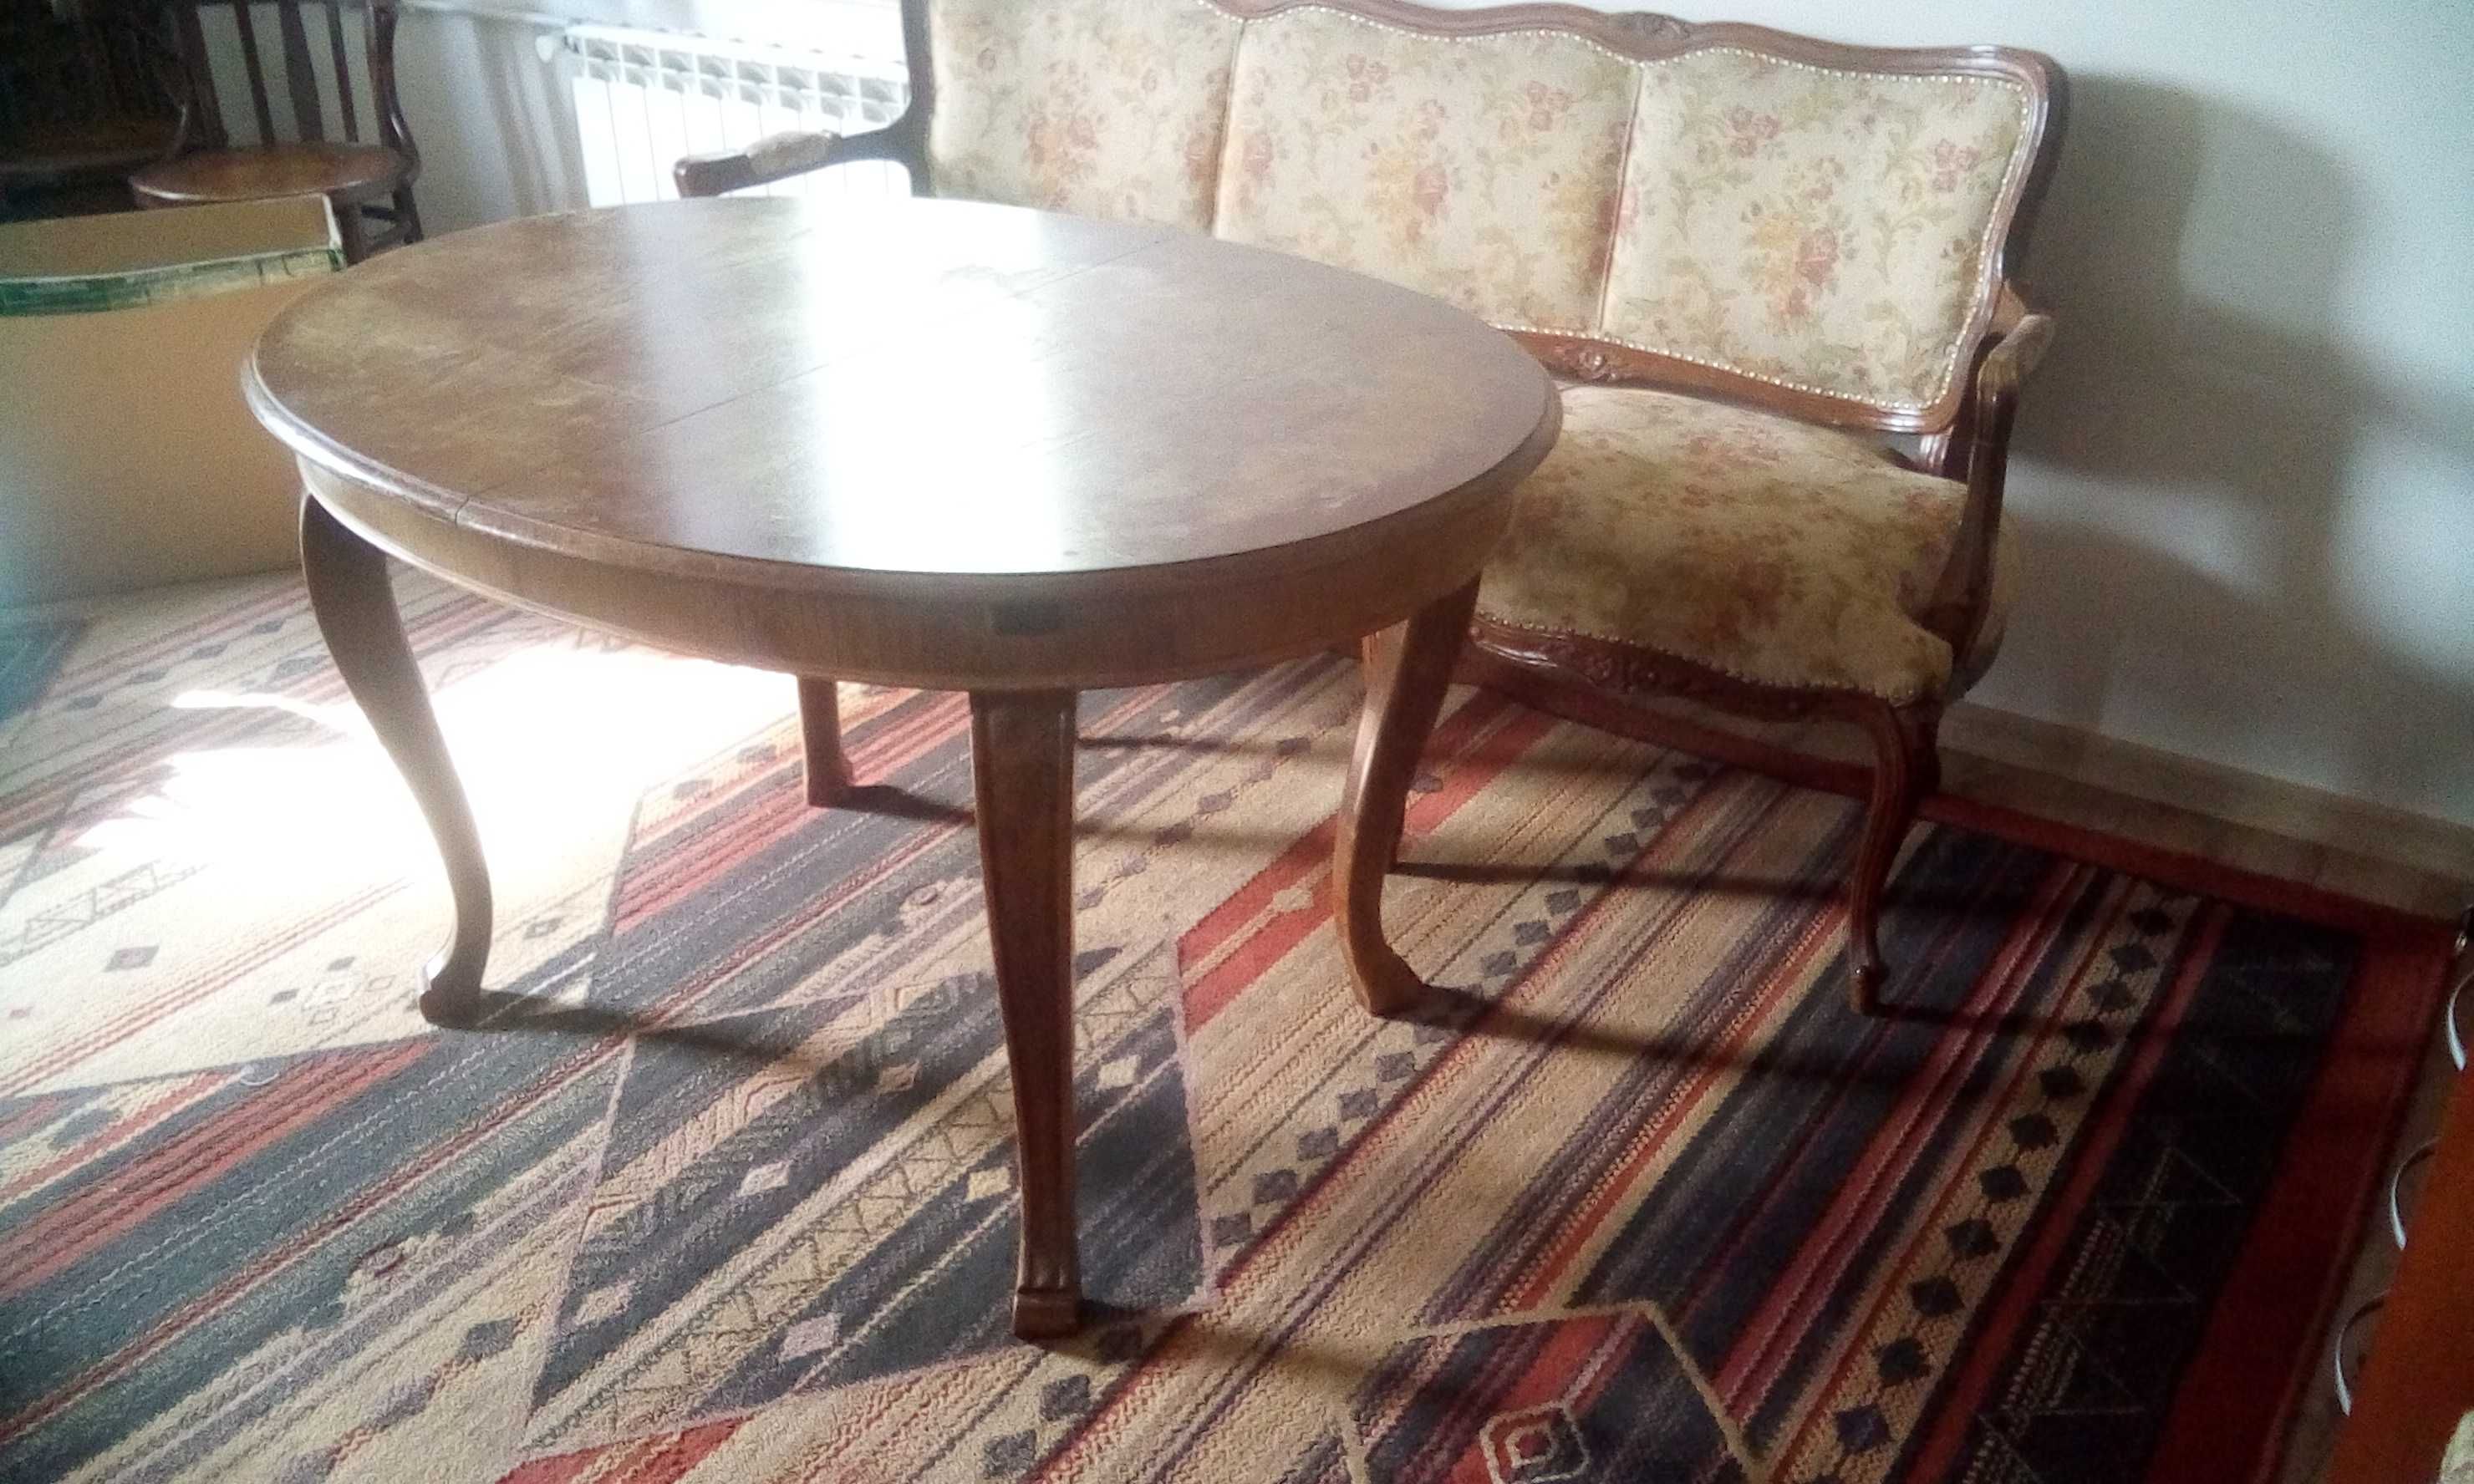 Stylowa kanapa i dwa fotele do renowacji sprzedam.